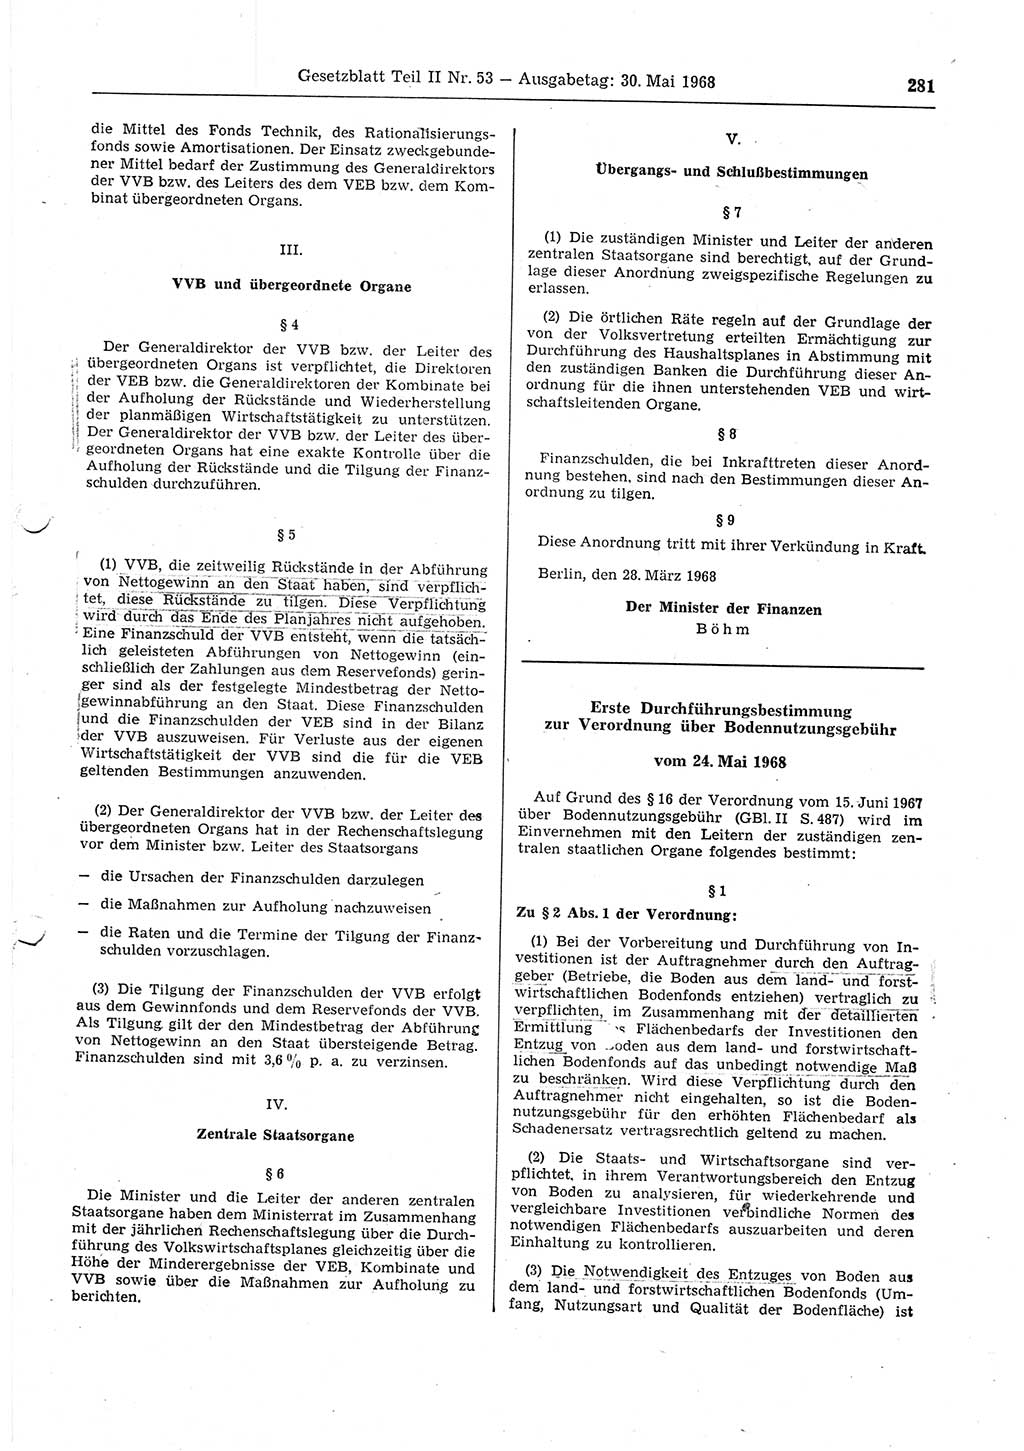 Gesetzblatt (GBl.) der Deutschen Demokratischen Republik (DDR) Teil ⅠⅠ 1968, Seite 281 (GBl. DDR ⅠⅠ 1968, S. 281)